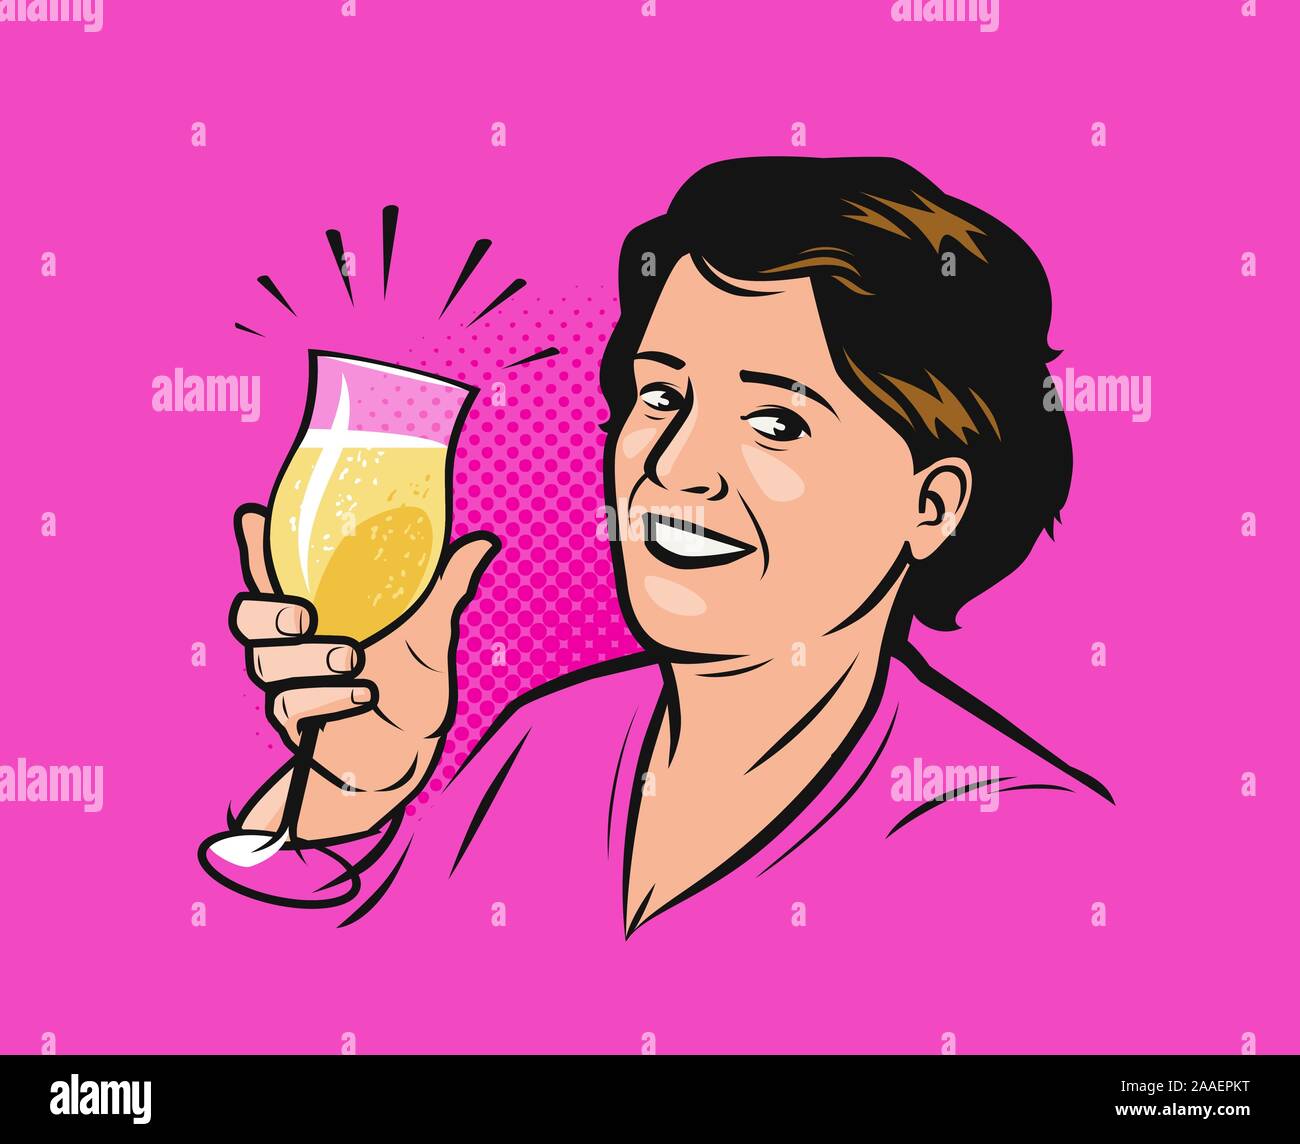 donna felice con un bicchiere di champagne. Illustrazione vettoriale in stile fumetto pop art retrò Illustrazione Vettoriale